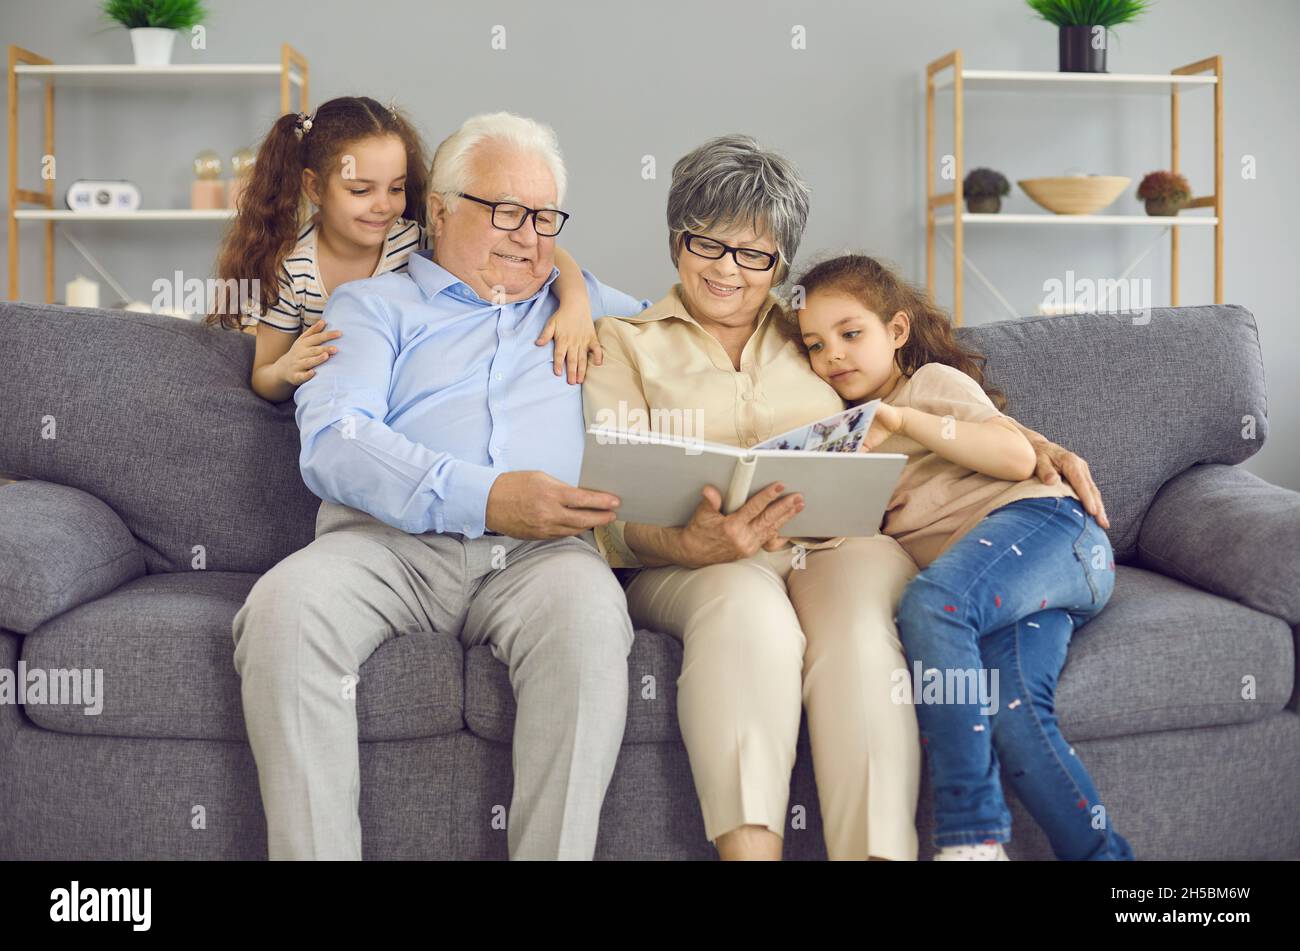 Les grands-parents heureux et leurs deux petites-filles regardent un livre de photos avec une photo de famille ensemble. Banque D'Images